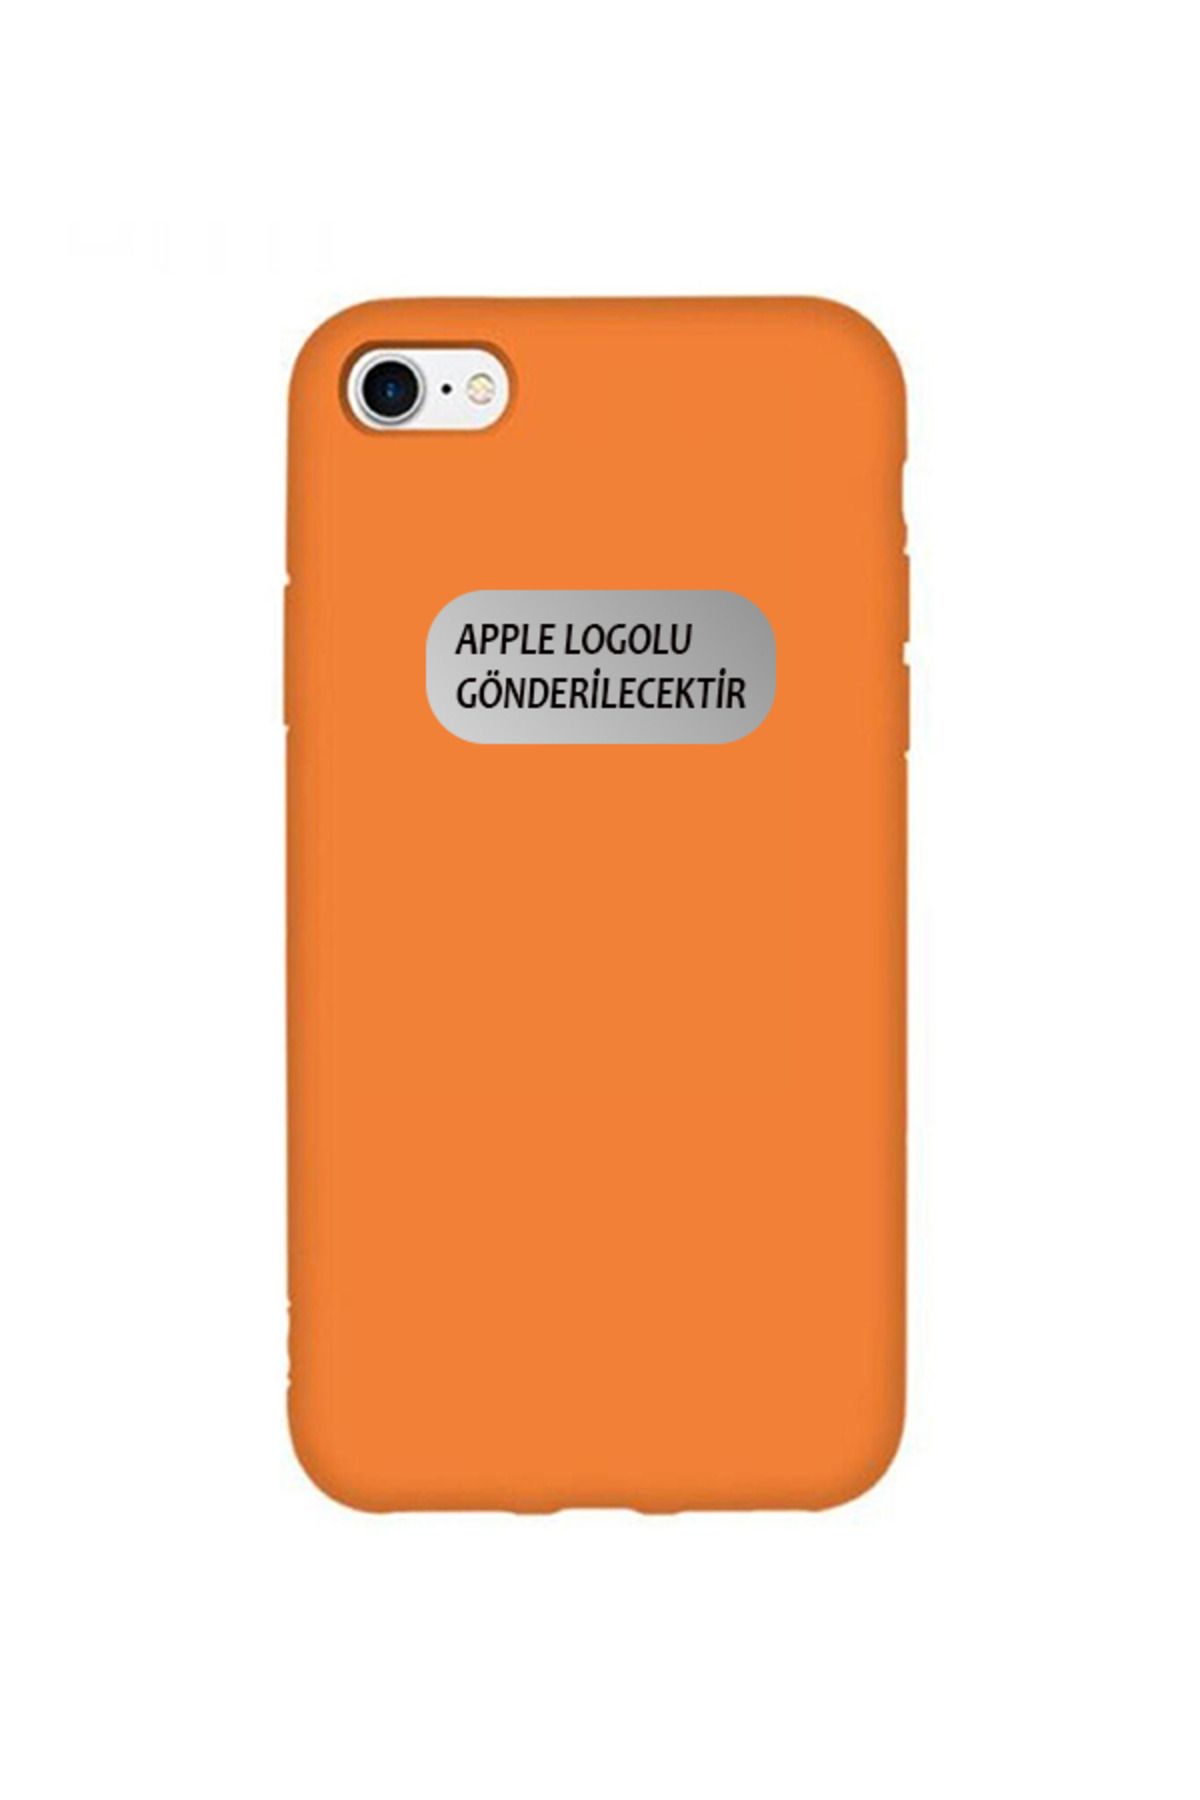 TrendCell Apple Iphone 6 / 6s Uyumlu Içi Kadife Logolu Lansman Silikon Kılıf Kapak Turuncu